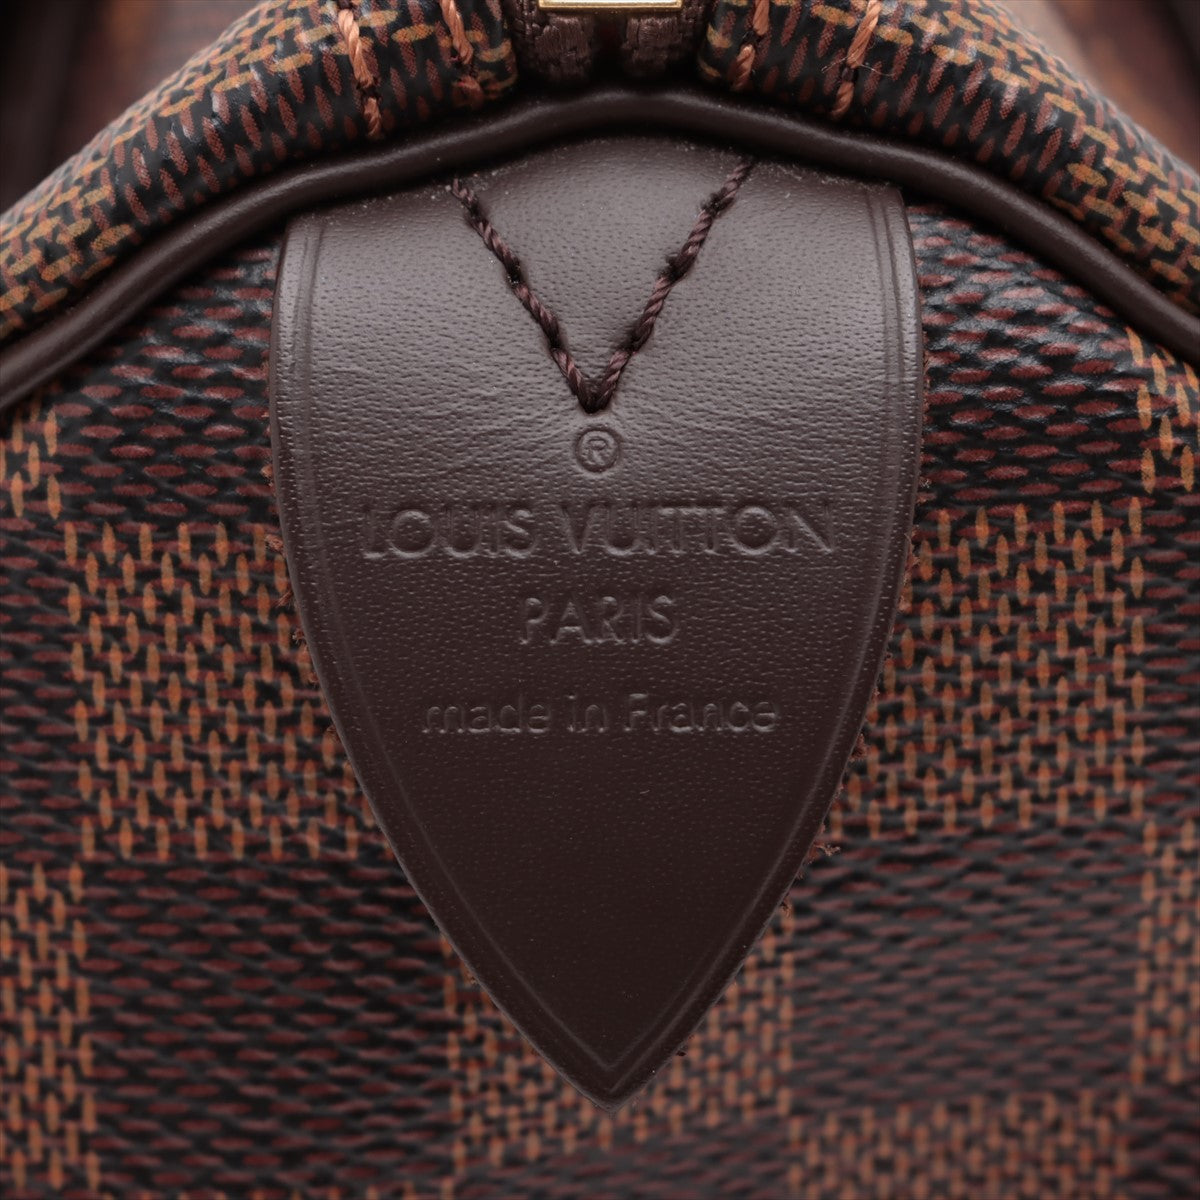 Louis Vuitton Damier Speedy 25 N41365